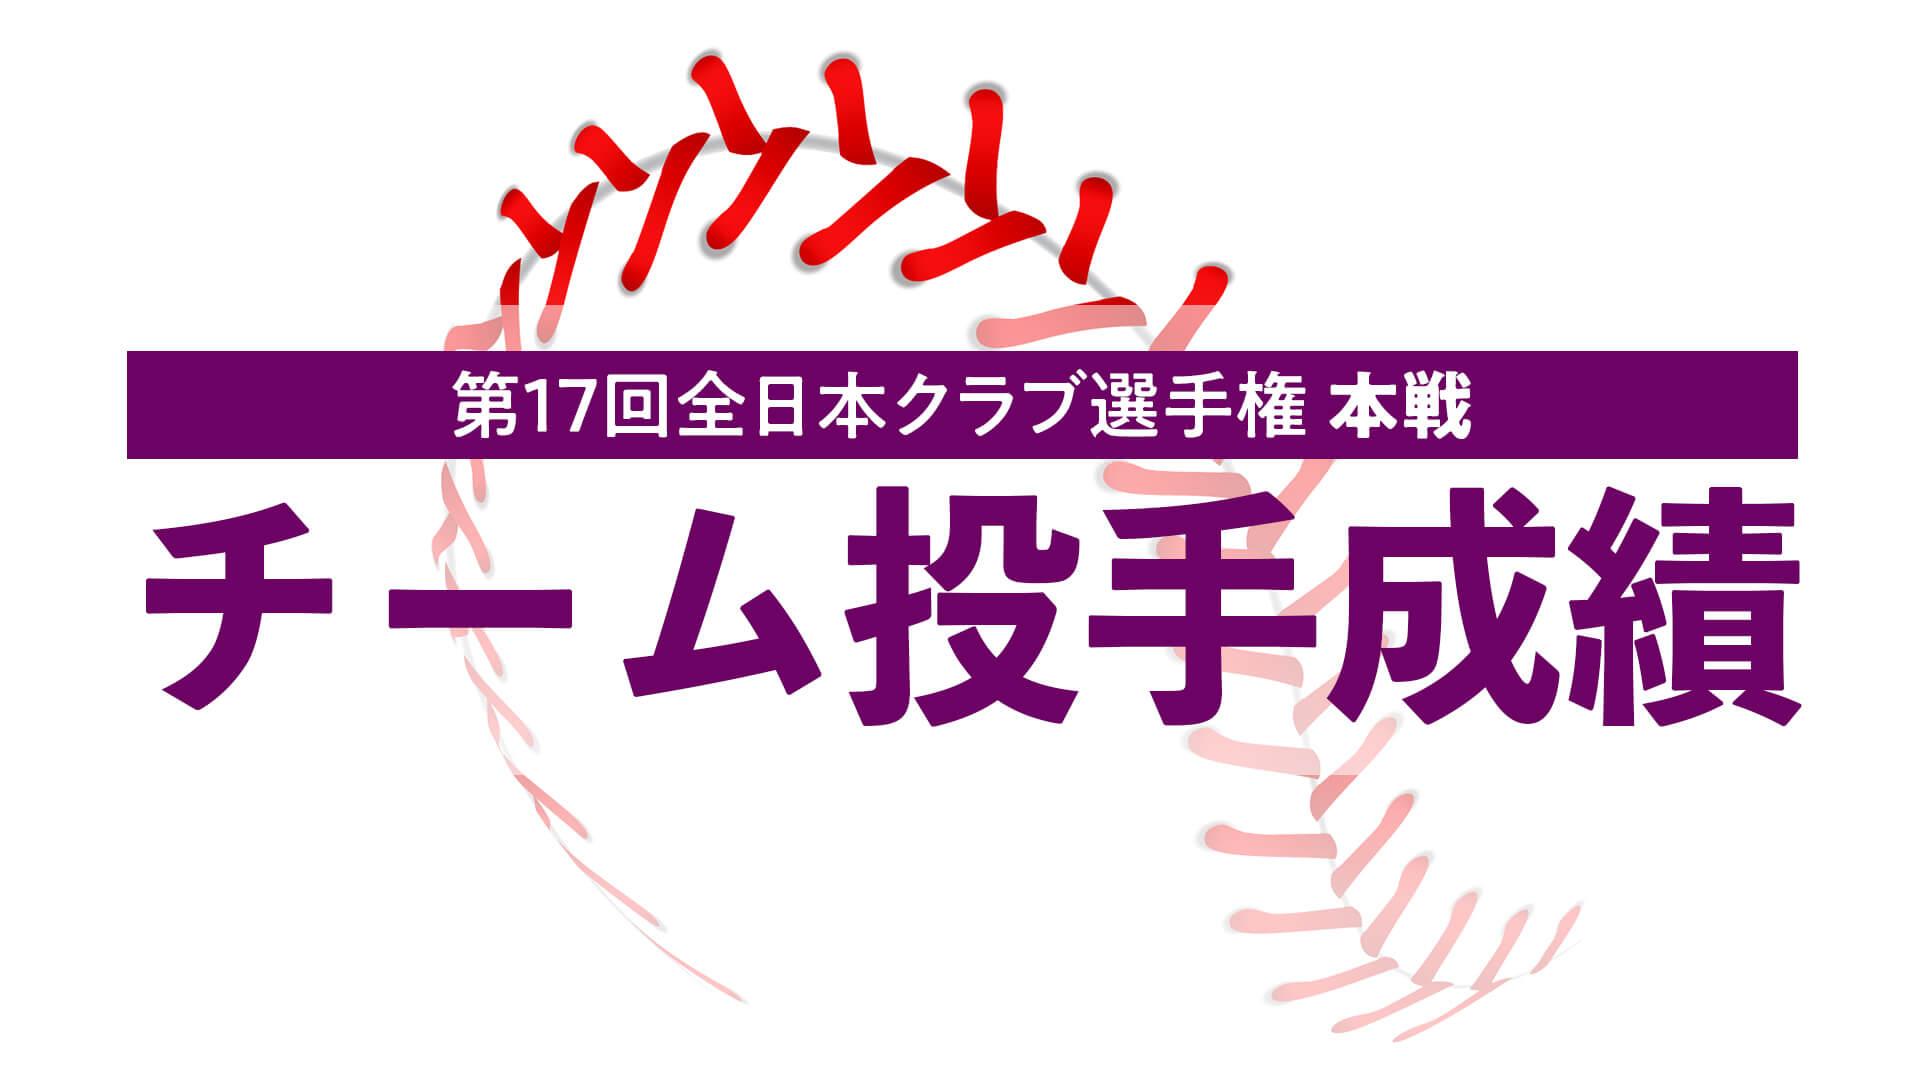 第17回全日本女子硬式クラブ野球選手権大会『チーム投手成績』